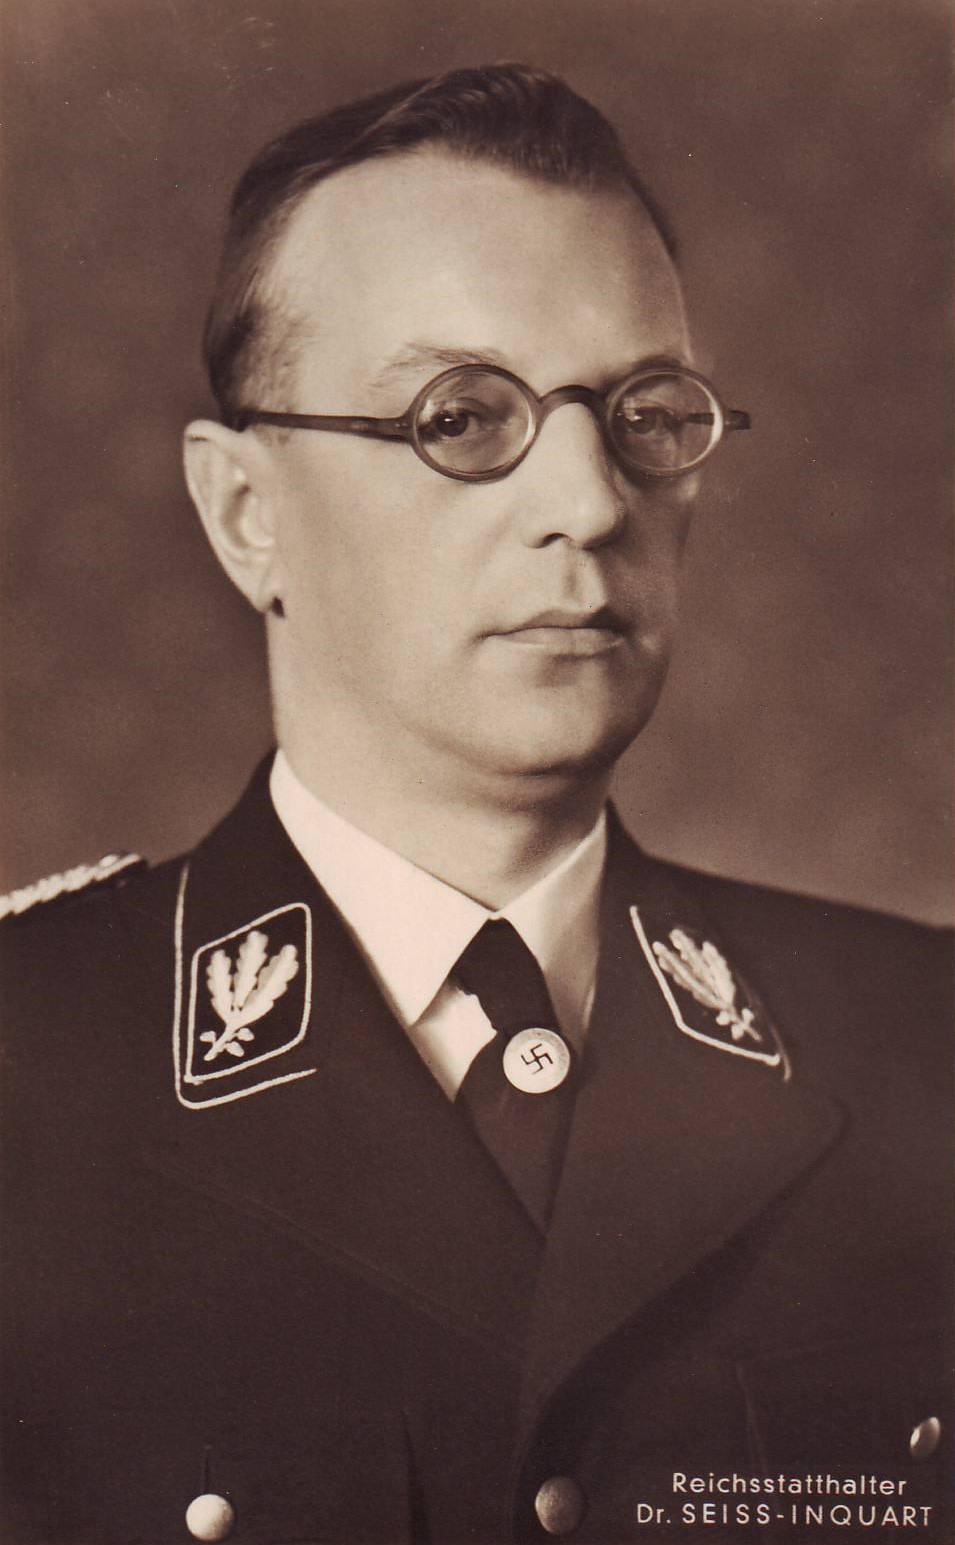 Portret van Dr. Arthur Seyss-Inquart, Oostenrijker, door Hitler als Reichskommissar benoemd in Nederland. Bron: Nationaal Archief. Licentie: Public Domain.